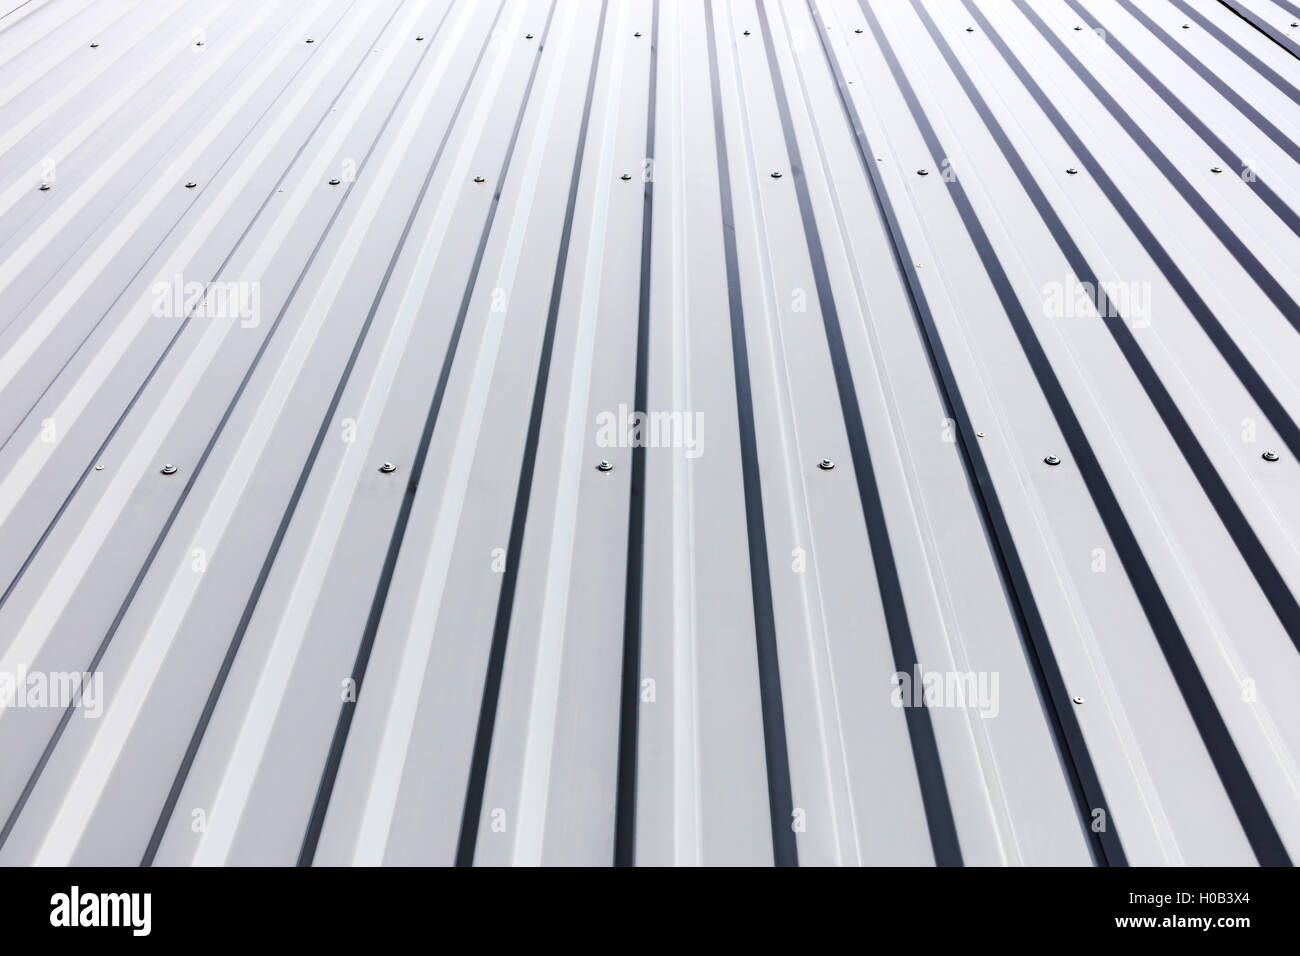 Wellpappe Stahlmantel mit Nieten am Dach des Industriebaus Stockfoto